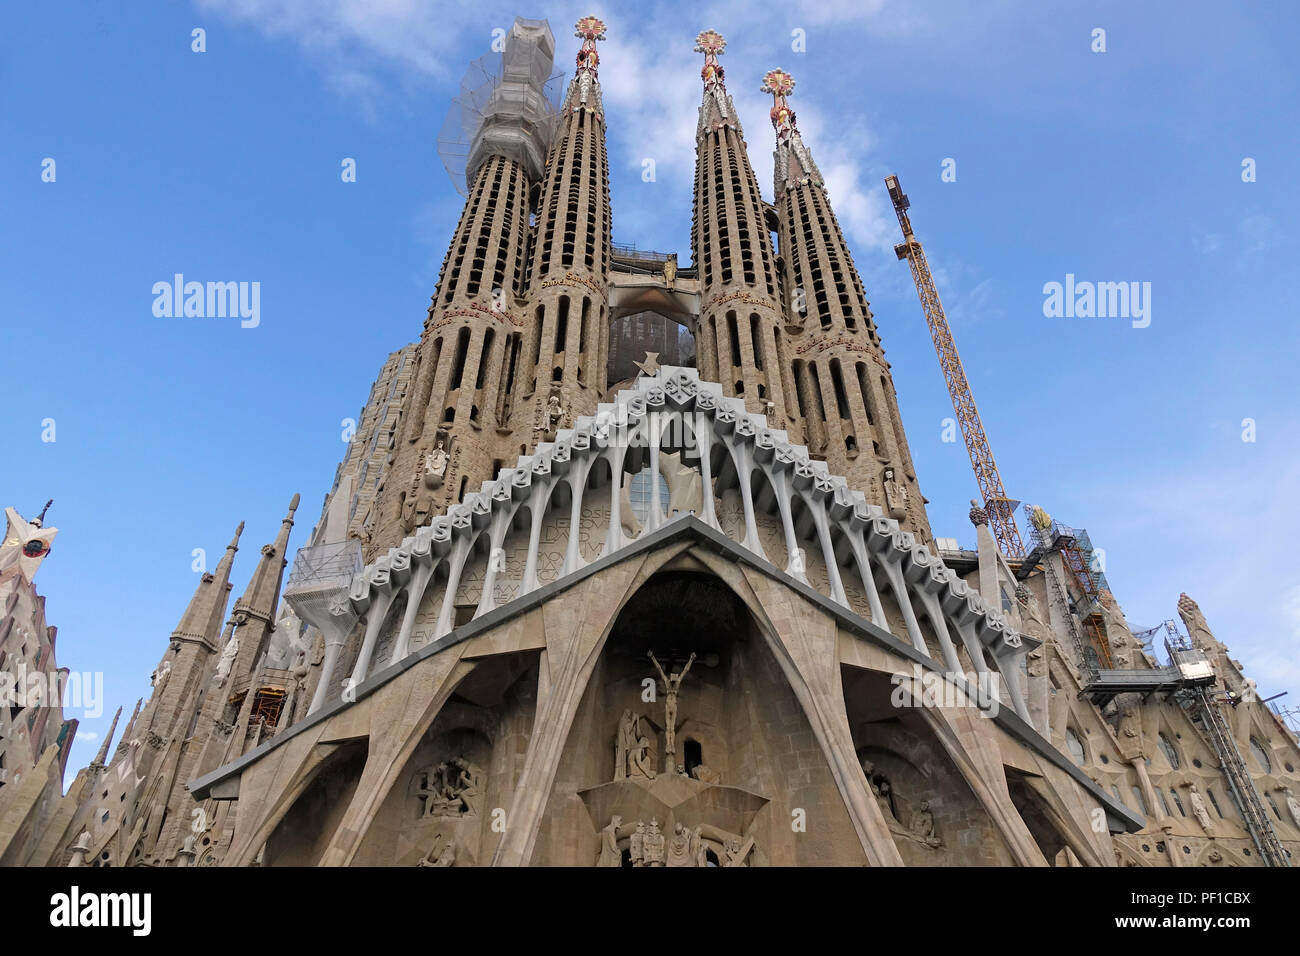 Pierre Détail architectural extérieur de la Basilique de la Sagrada Família à Barcelone Espagne une tour encore en construction Banque D'Images